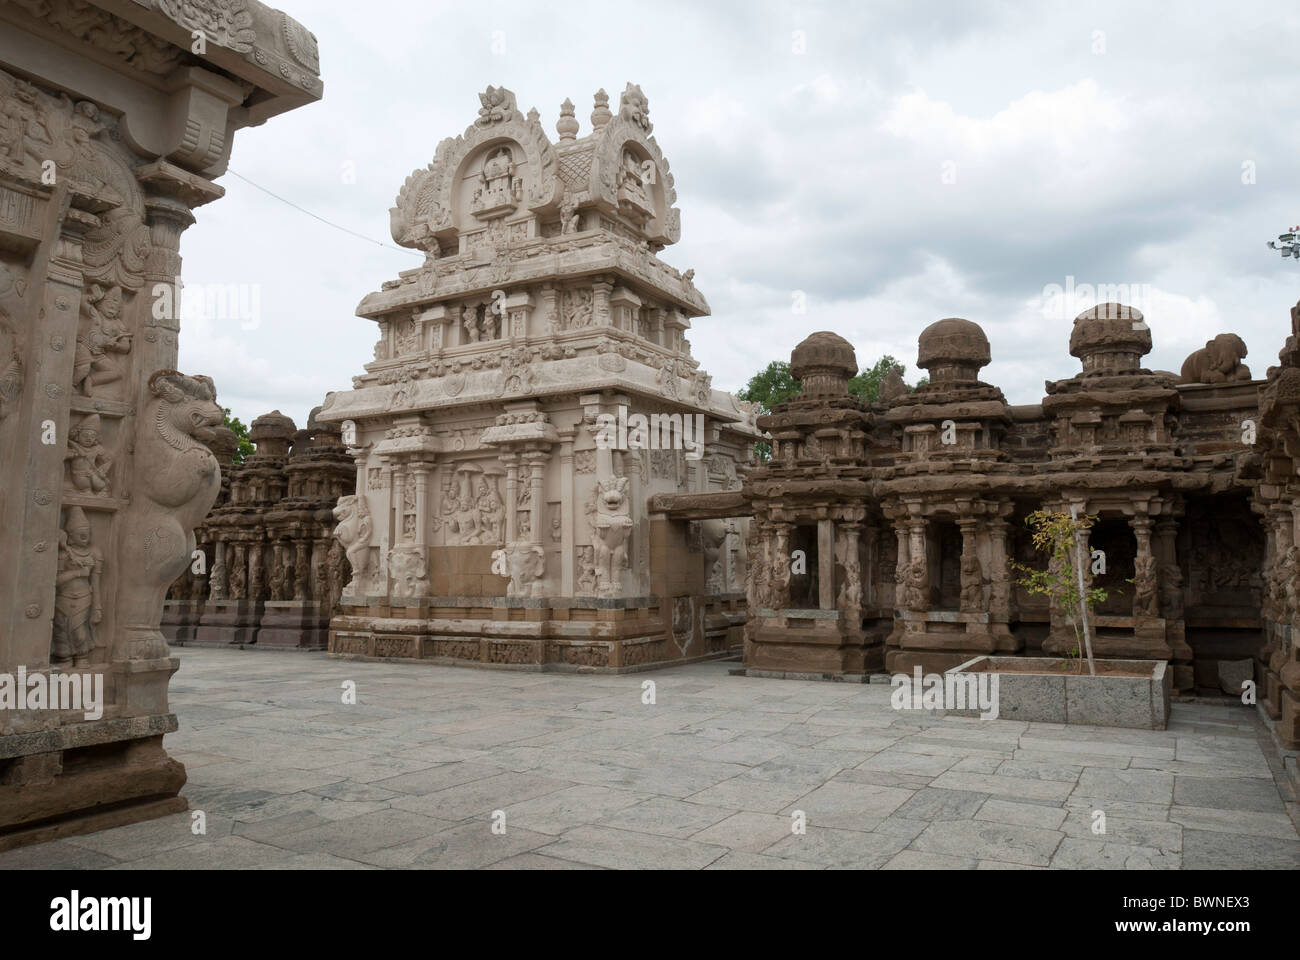 Le temple Kailasanatha;a été construit par les Pallavas au début du viiie siècle de notre ère. à kancheepuram ; Kanchipuram, Tamil Nadu, Inde. Banque D'Images